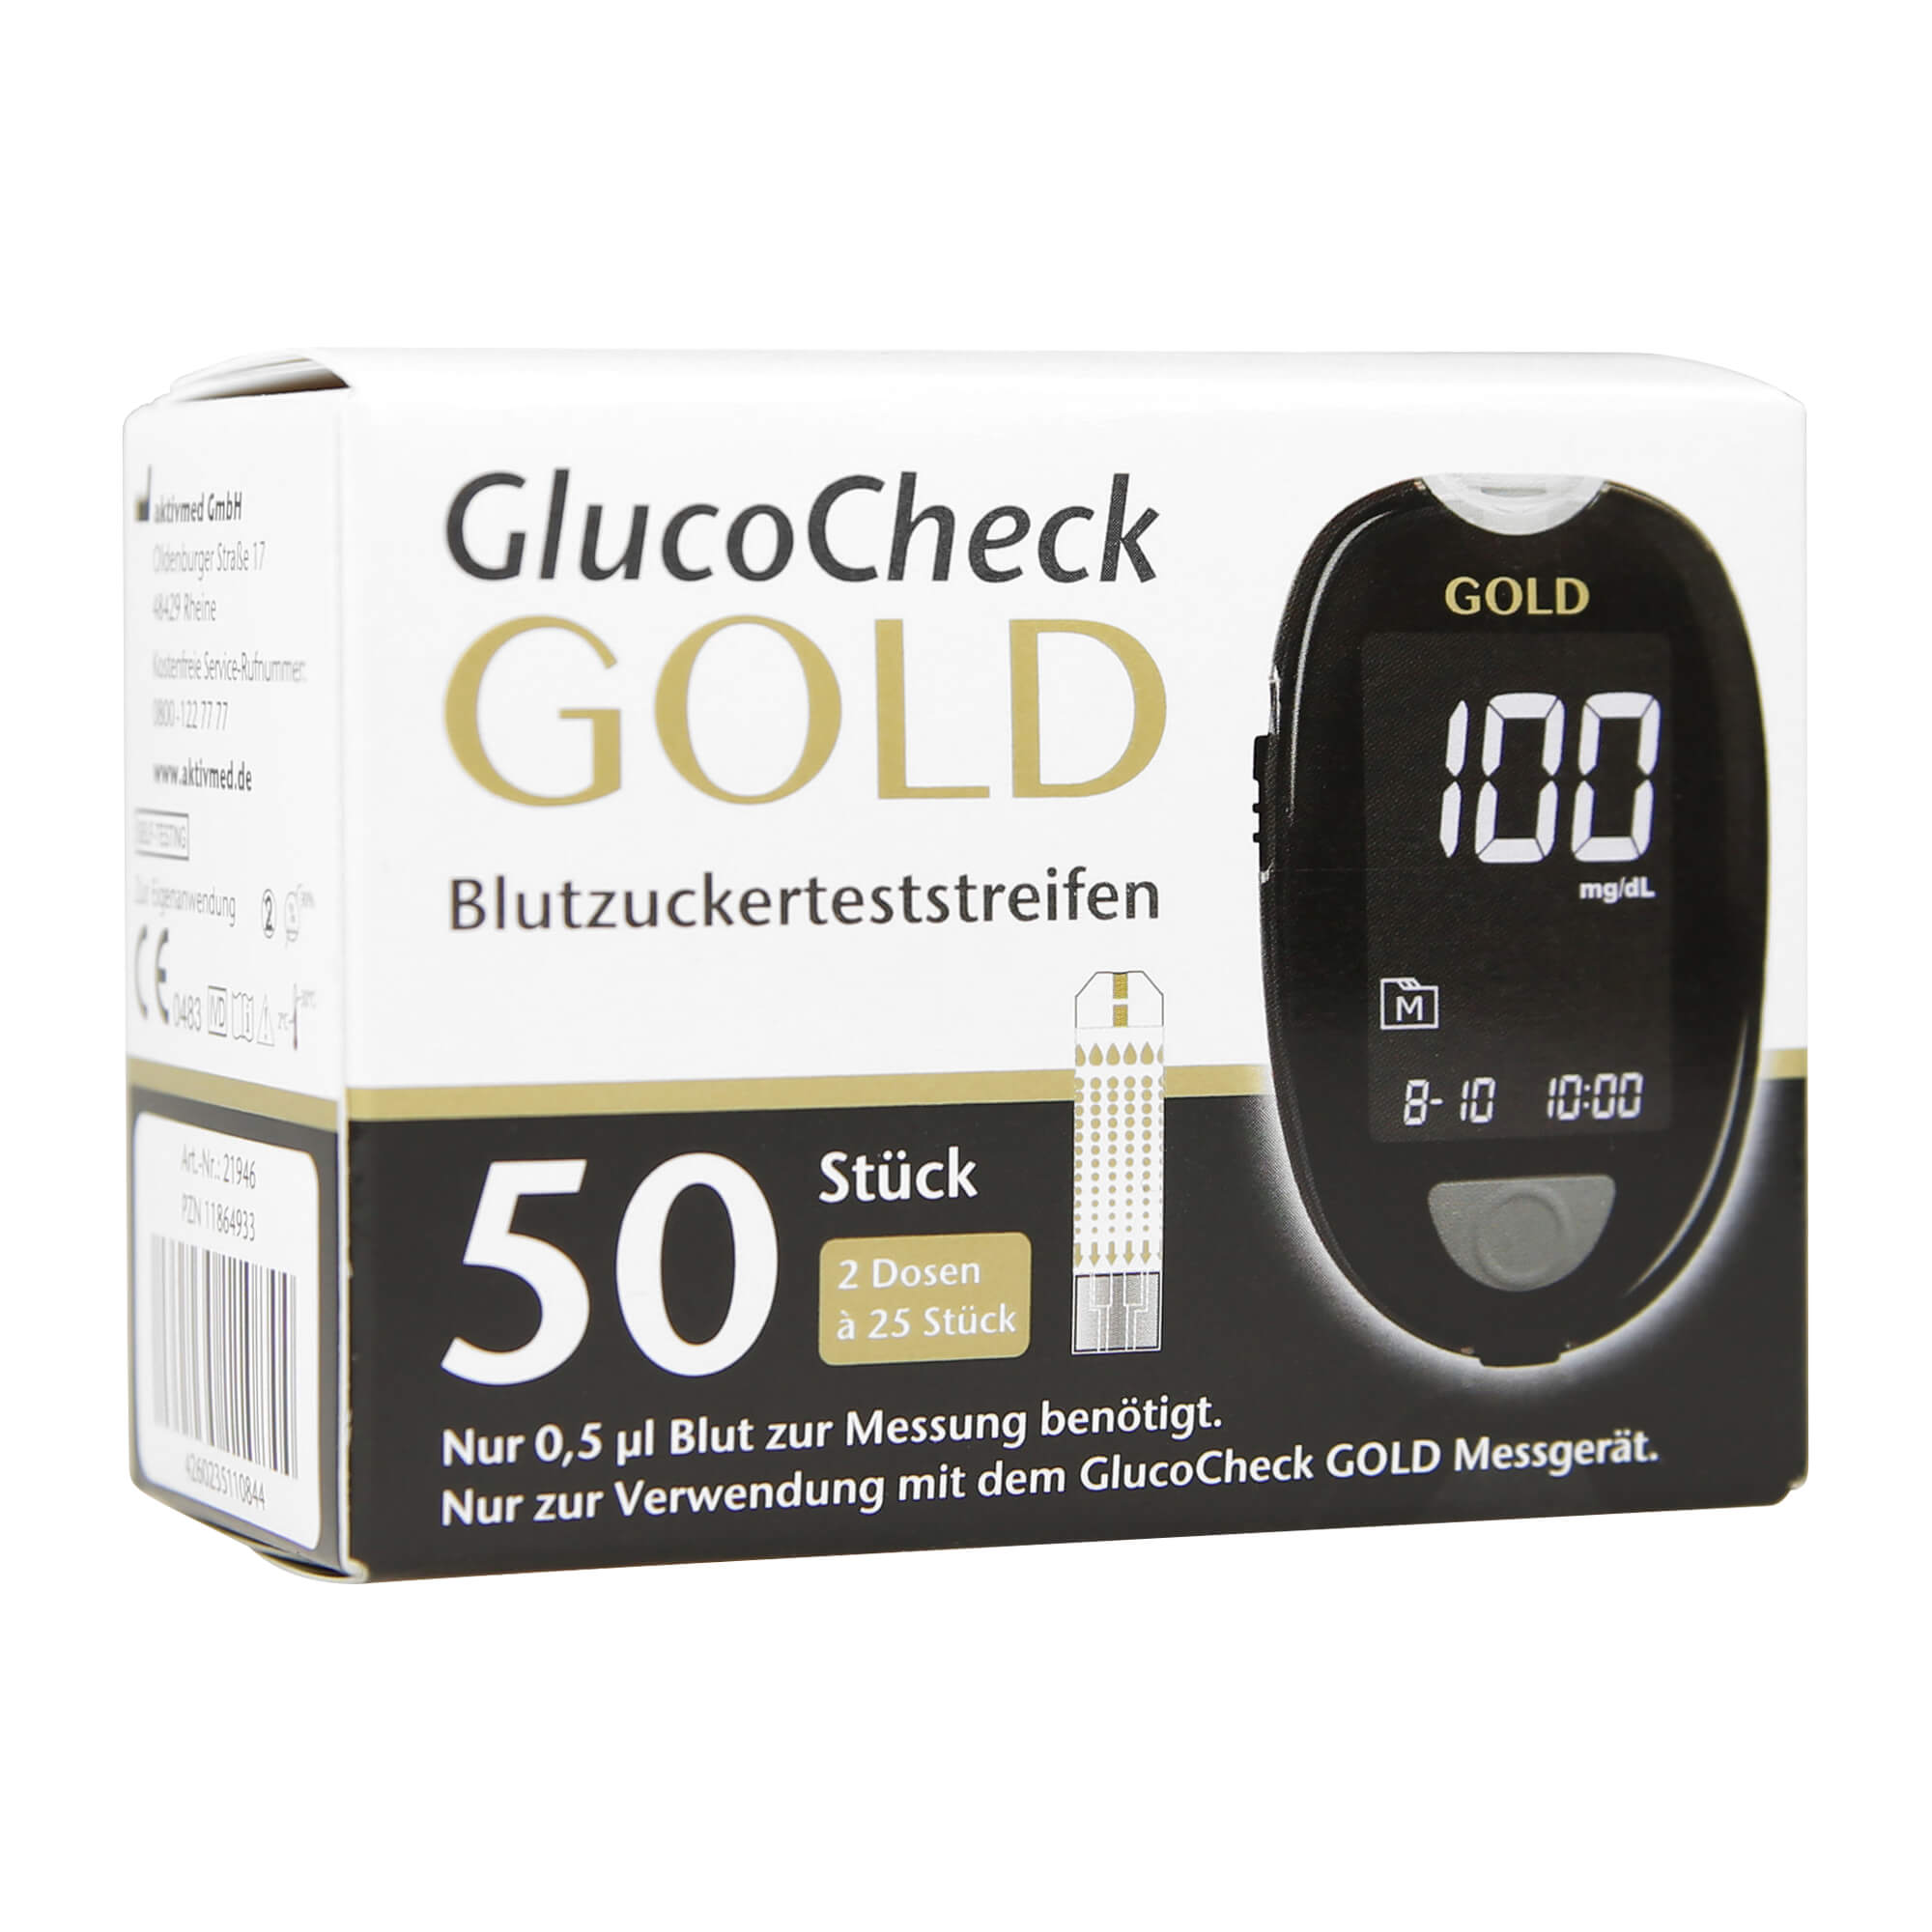 Zur Verwendung mit dem GlucoCheck GOLD.